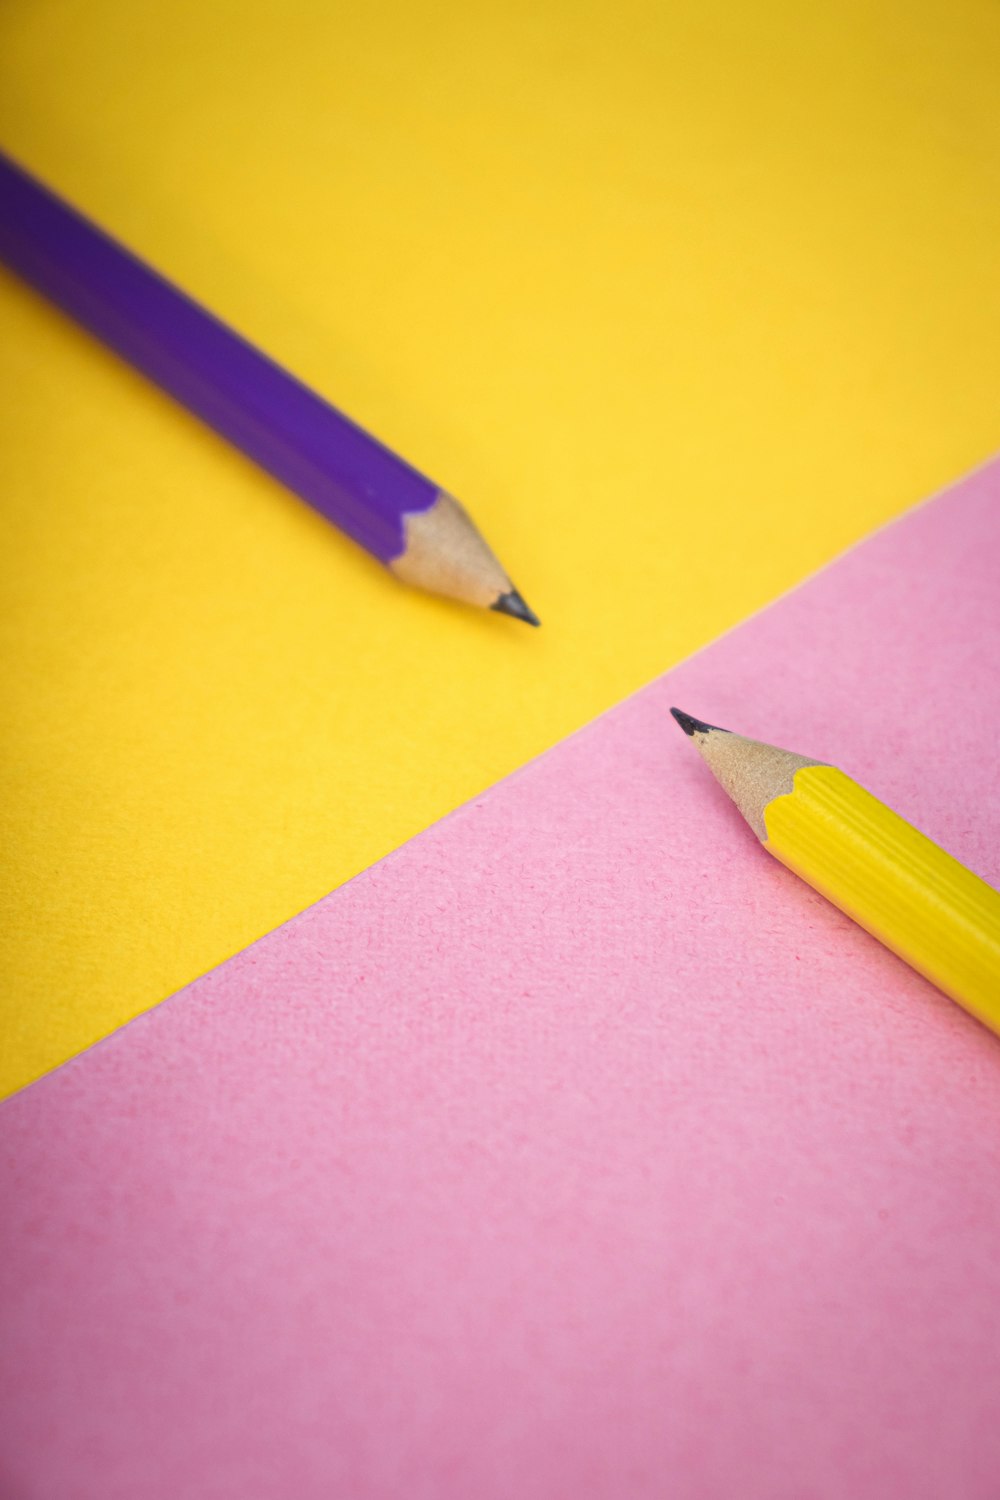 Gelber Bleistift auf lila Papier